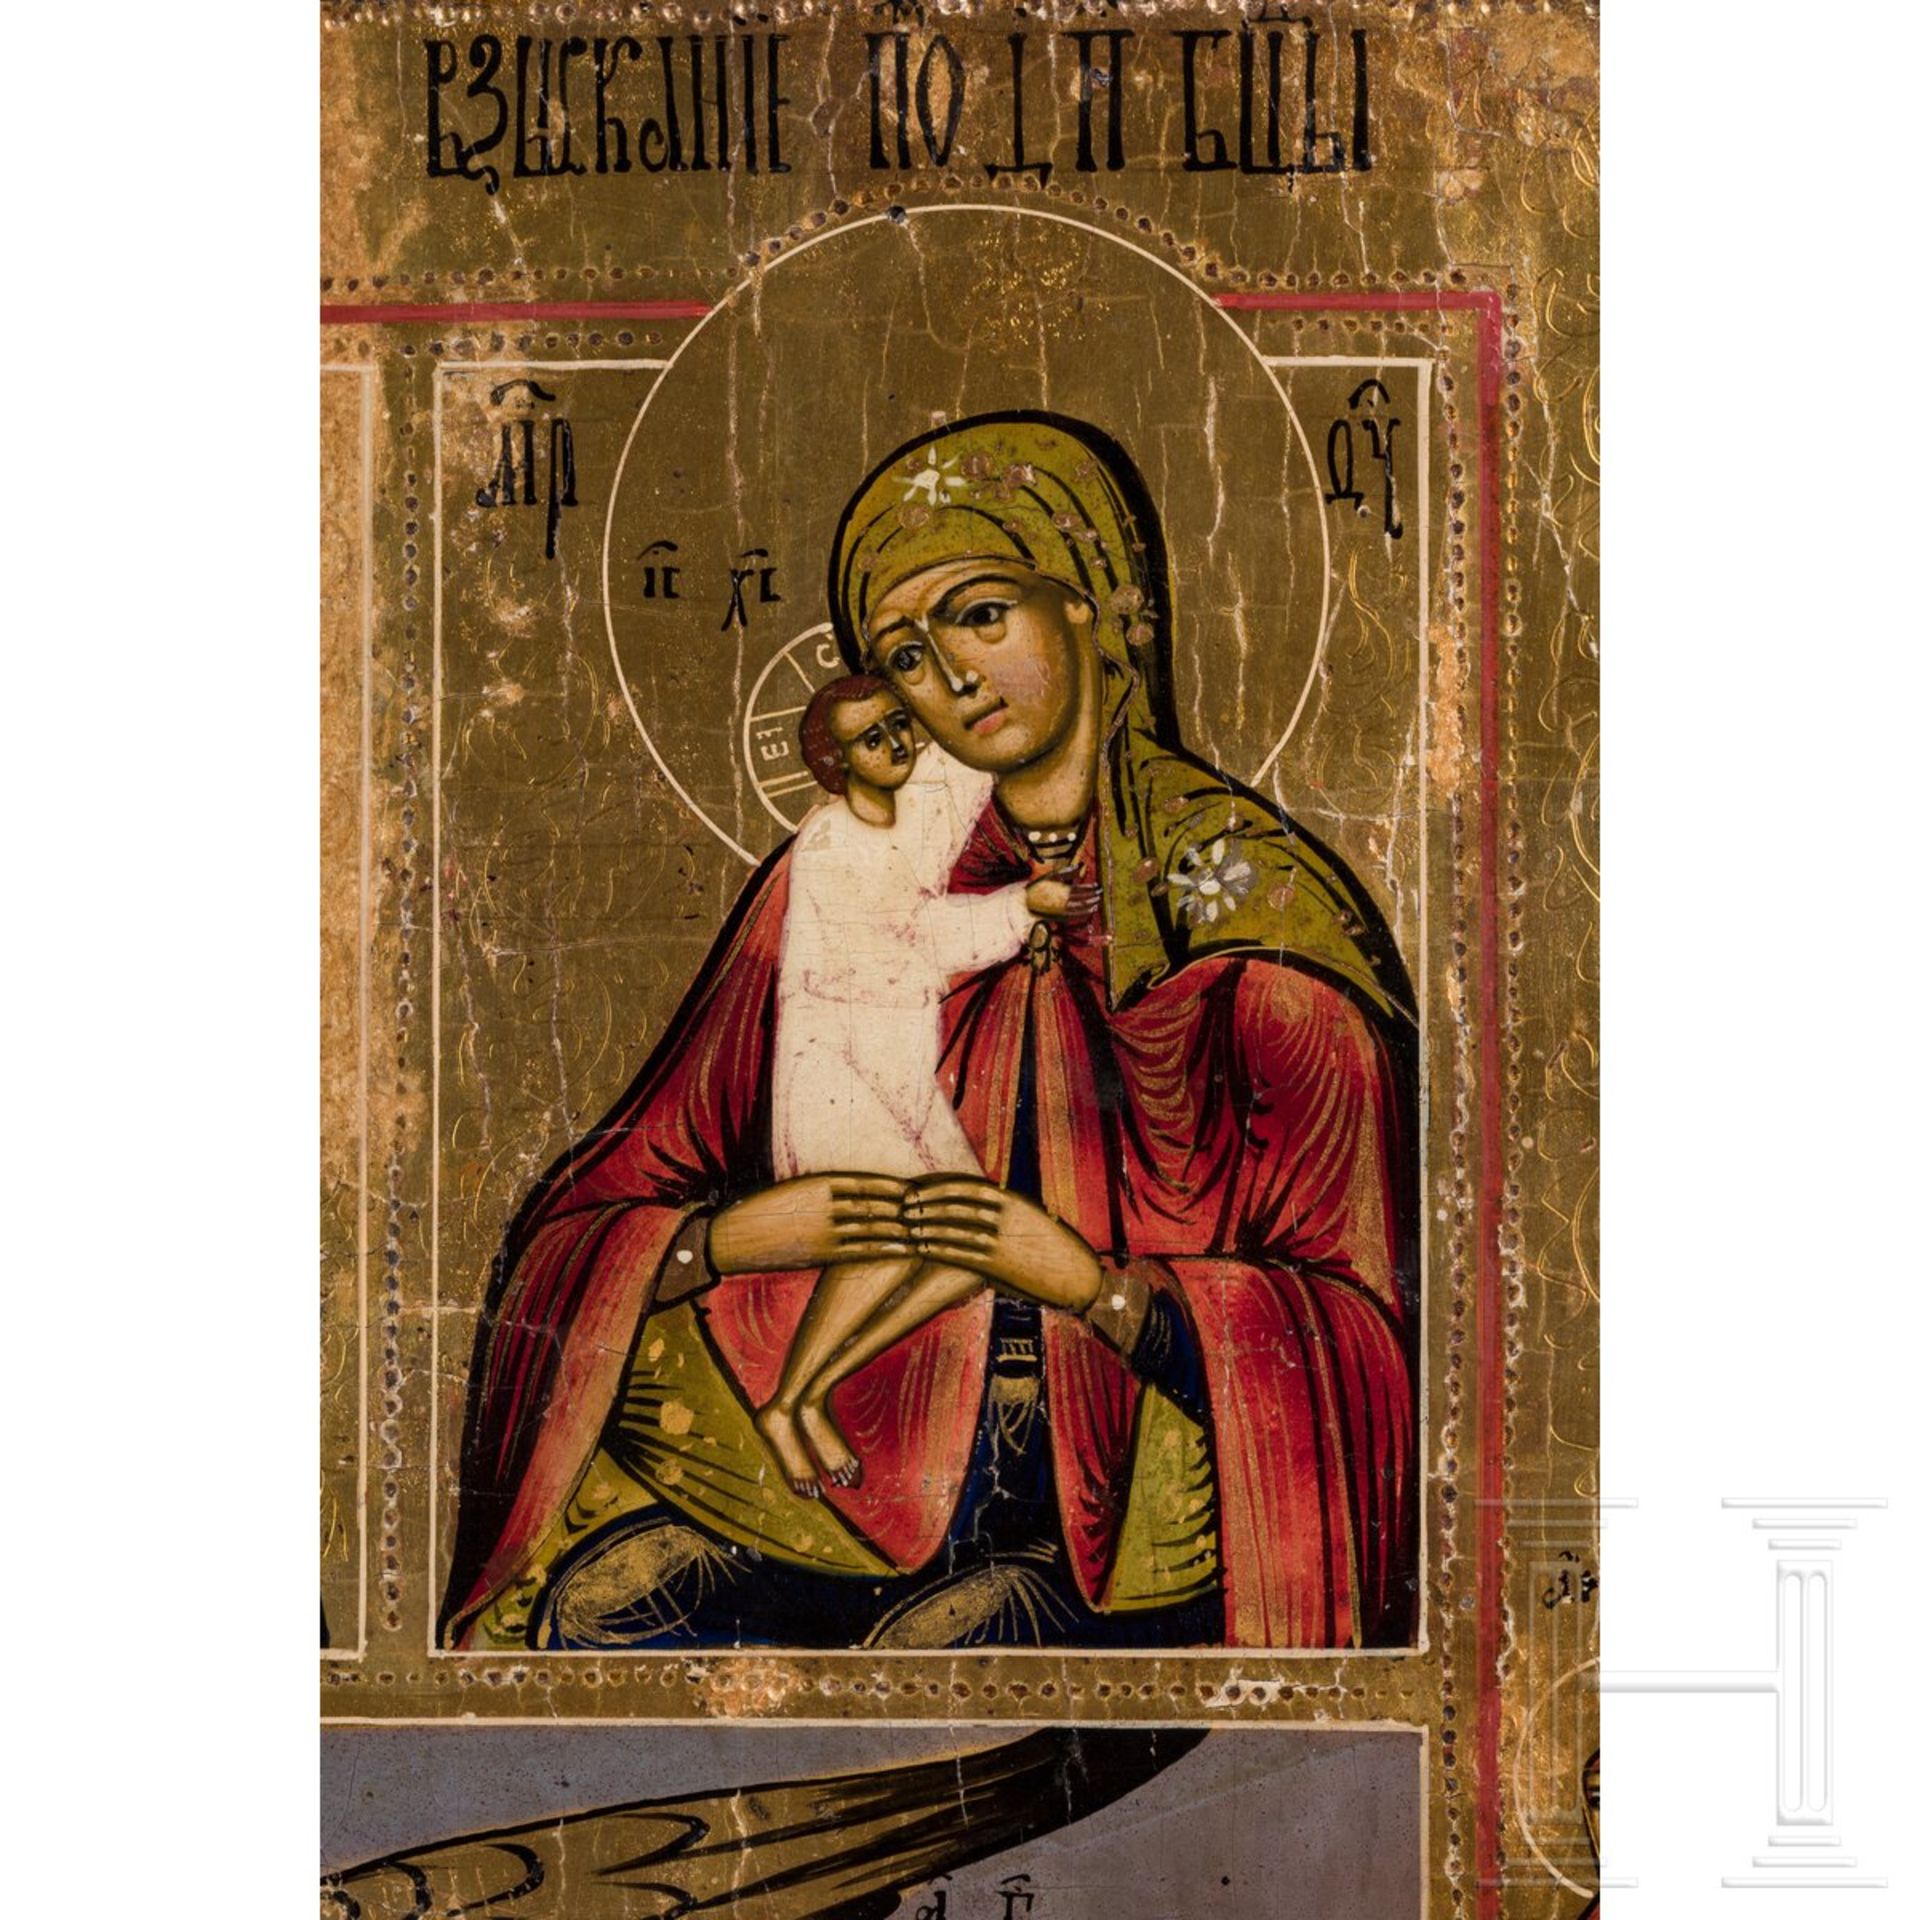 Große Mehrfelderikone mit der Schutzmantel-Madonna, Russland, Vetka, 2. Hälfte 19. Jhdt.  - Bild 4 aus 4